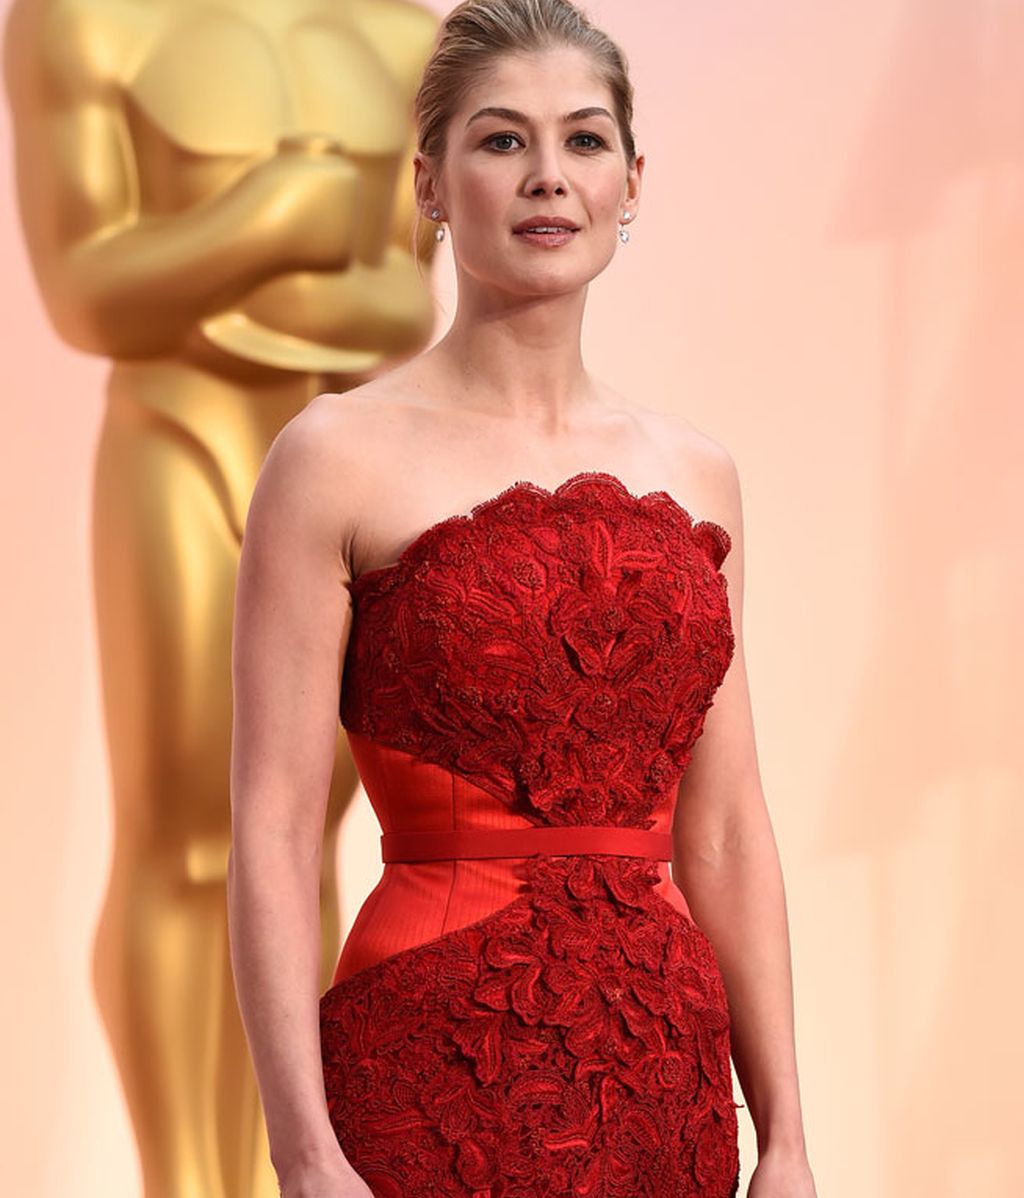 Las 'vips' eligen negro, plata y rojo para vestir en la alfombra roja de los Oscar